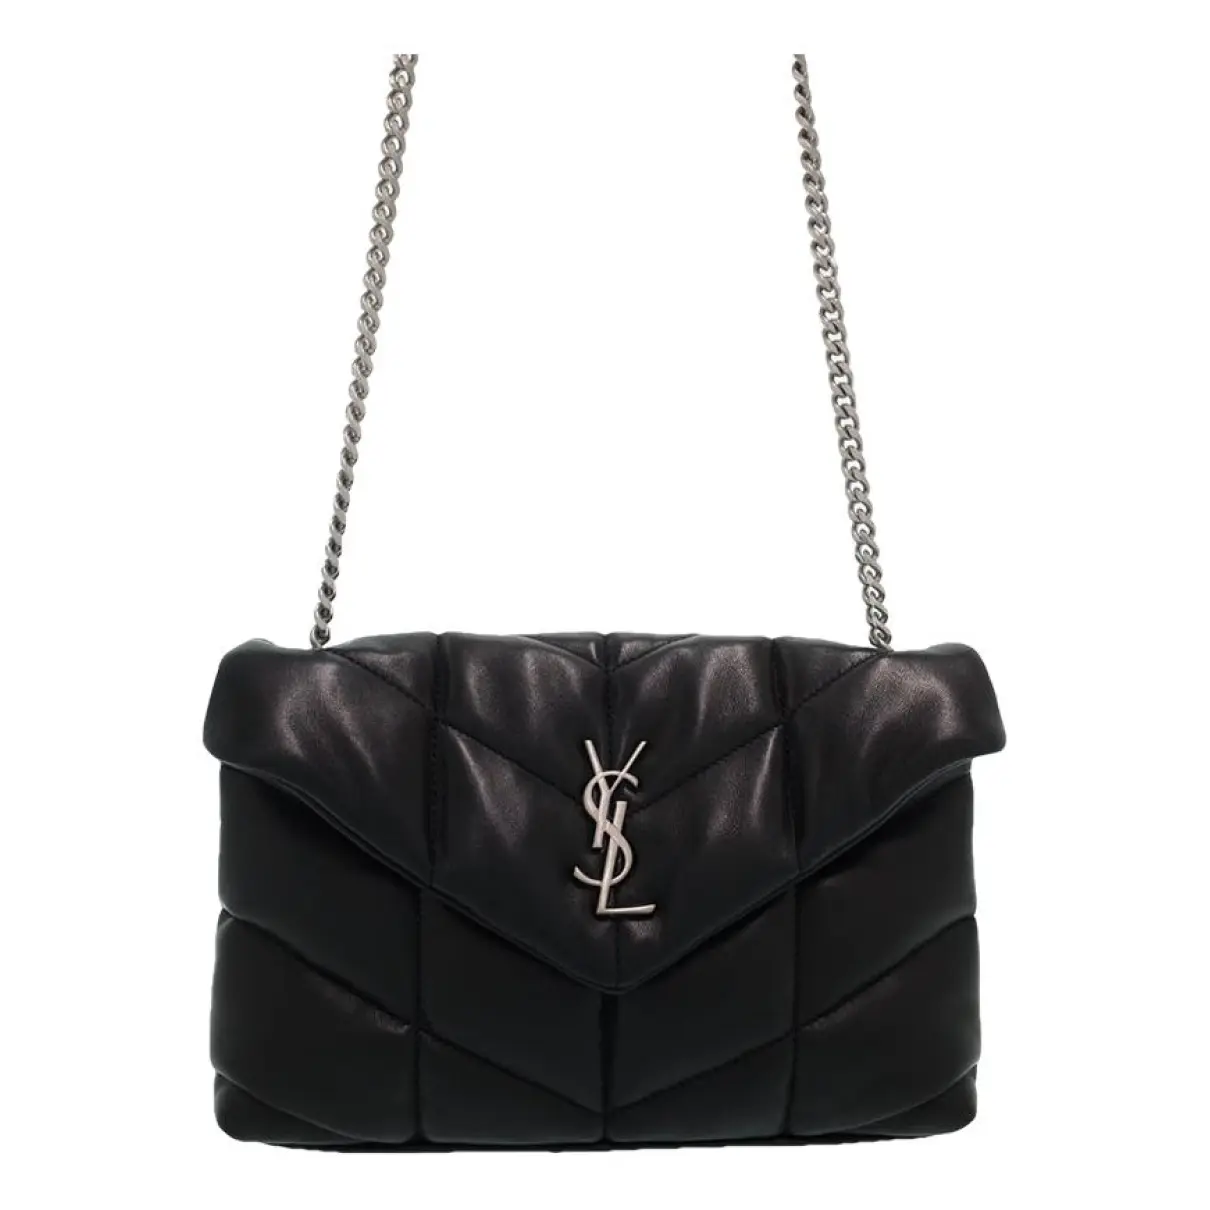 Lulu leather handbag